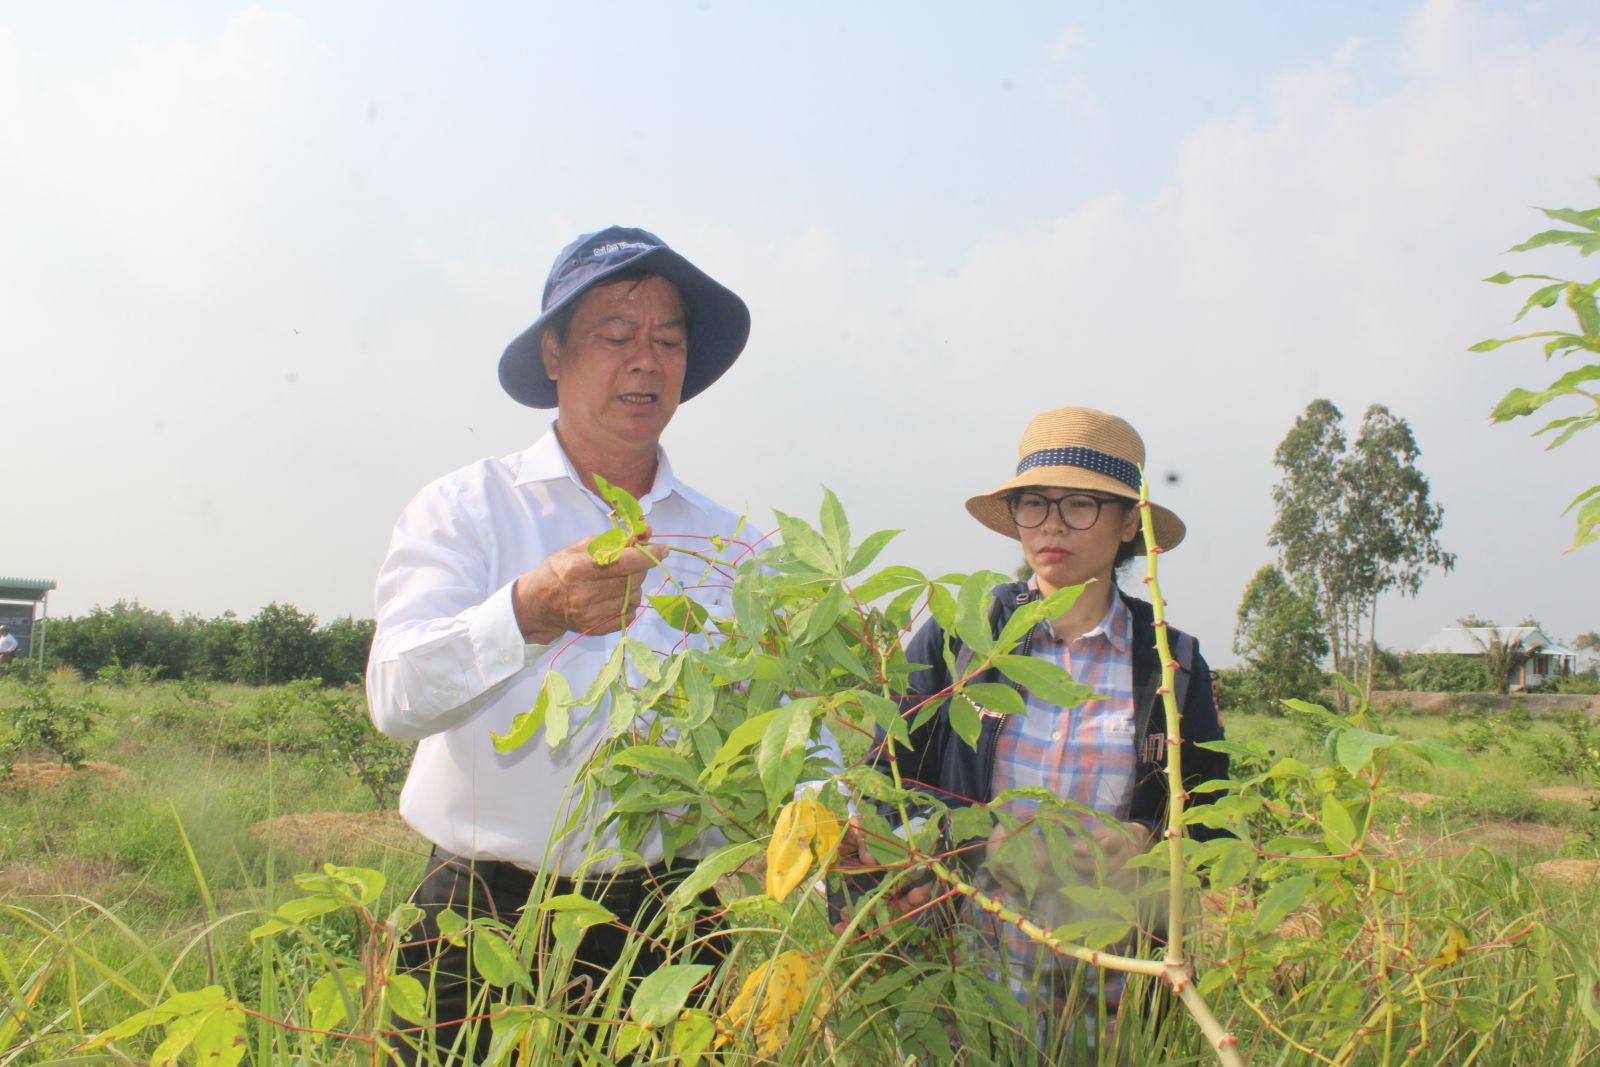 Phó Giám đốc Sở Nông nghiệp và Phát triển nông thôn - Nguyễn Chí Thiện kiểm tra tình hình bệnh khảm trên cây khoai mì